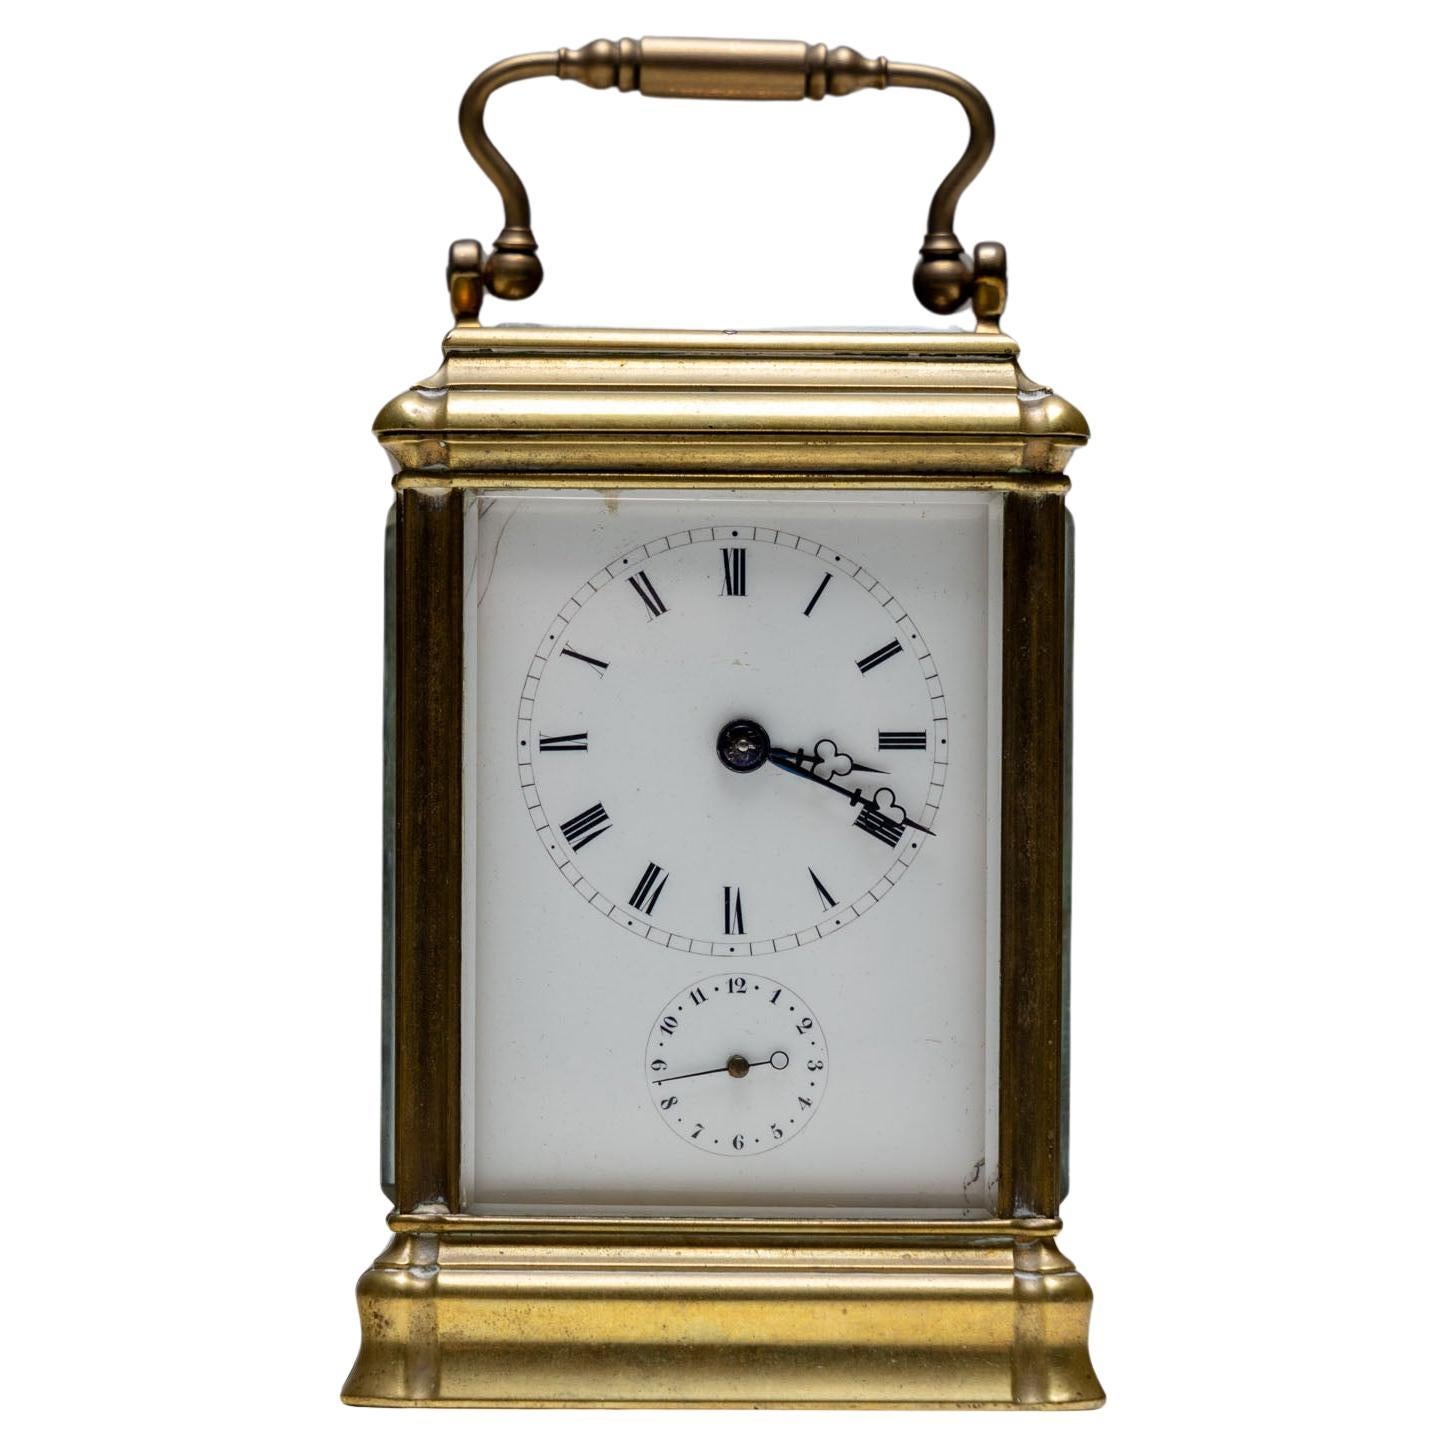 Horloge de voyage française par Aiguilles, fin 19e / début 20e siècle